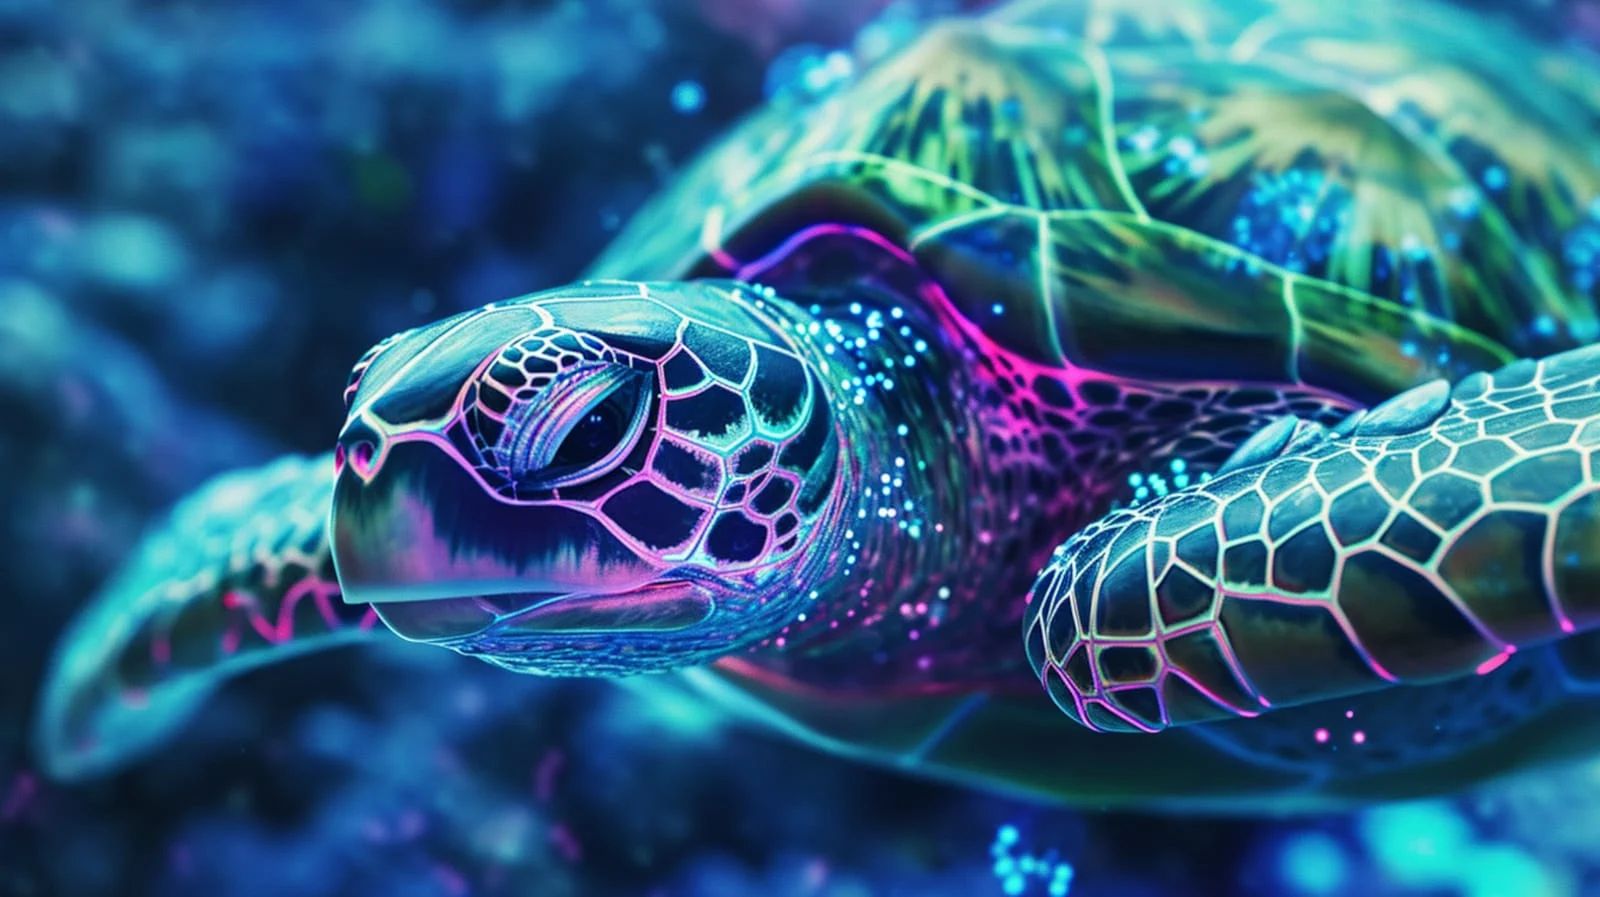 sea-turtle.jpg